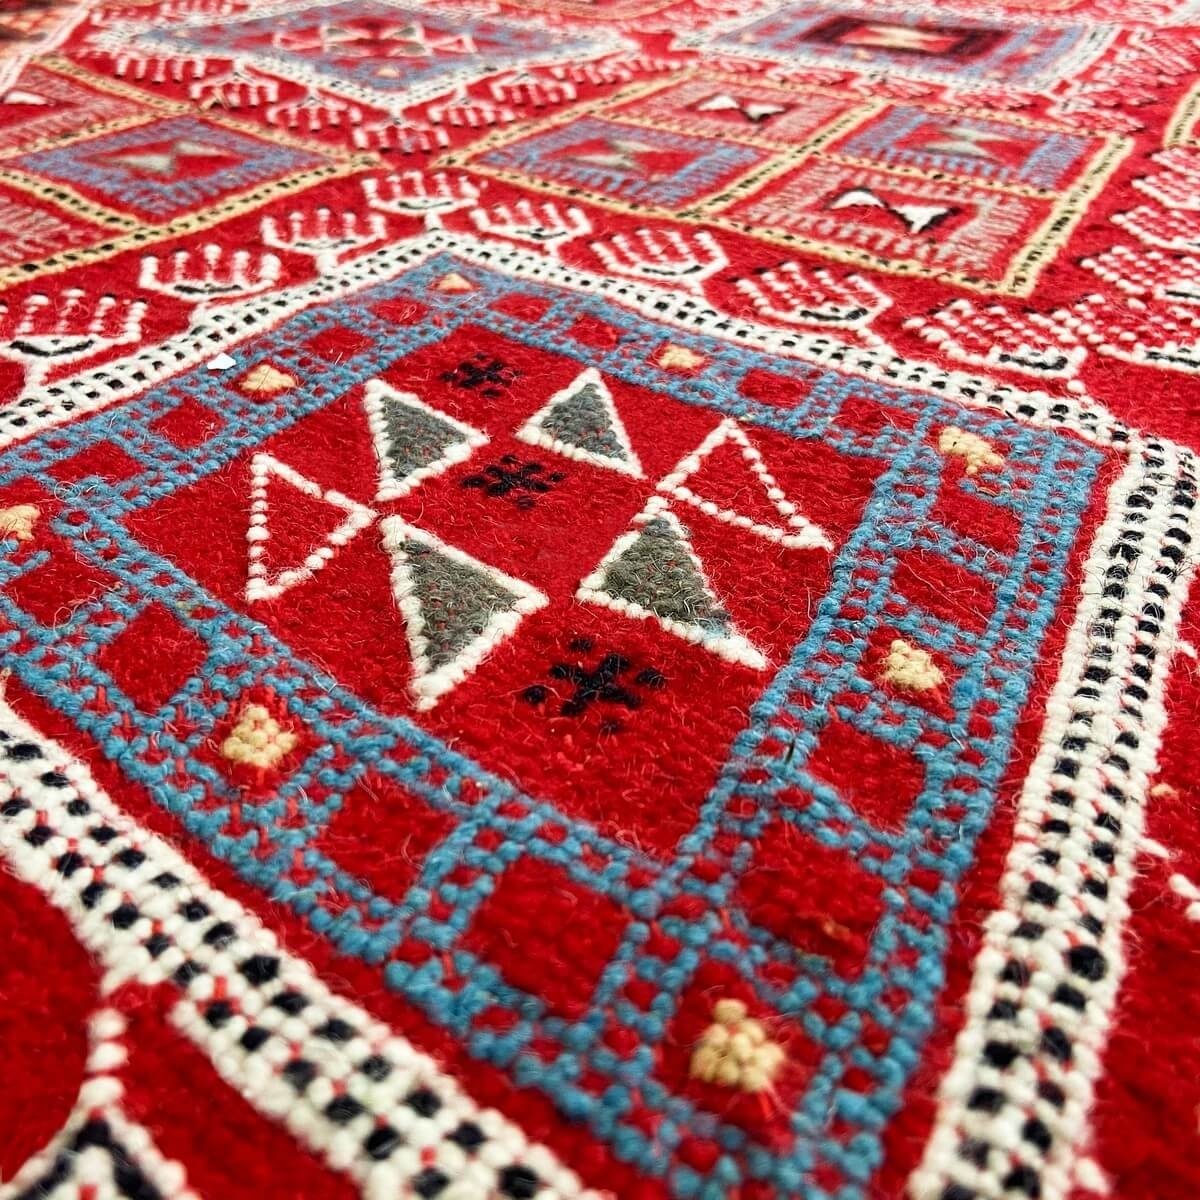 Berber tapijt Tapijt Margoum Ayoun 126x208 Rood (Handgeweven, Wol, Tunesië) Tunesisch Margoum Tapijt uit de stad Kairouan. Recht